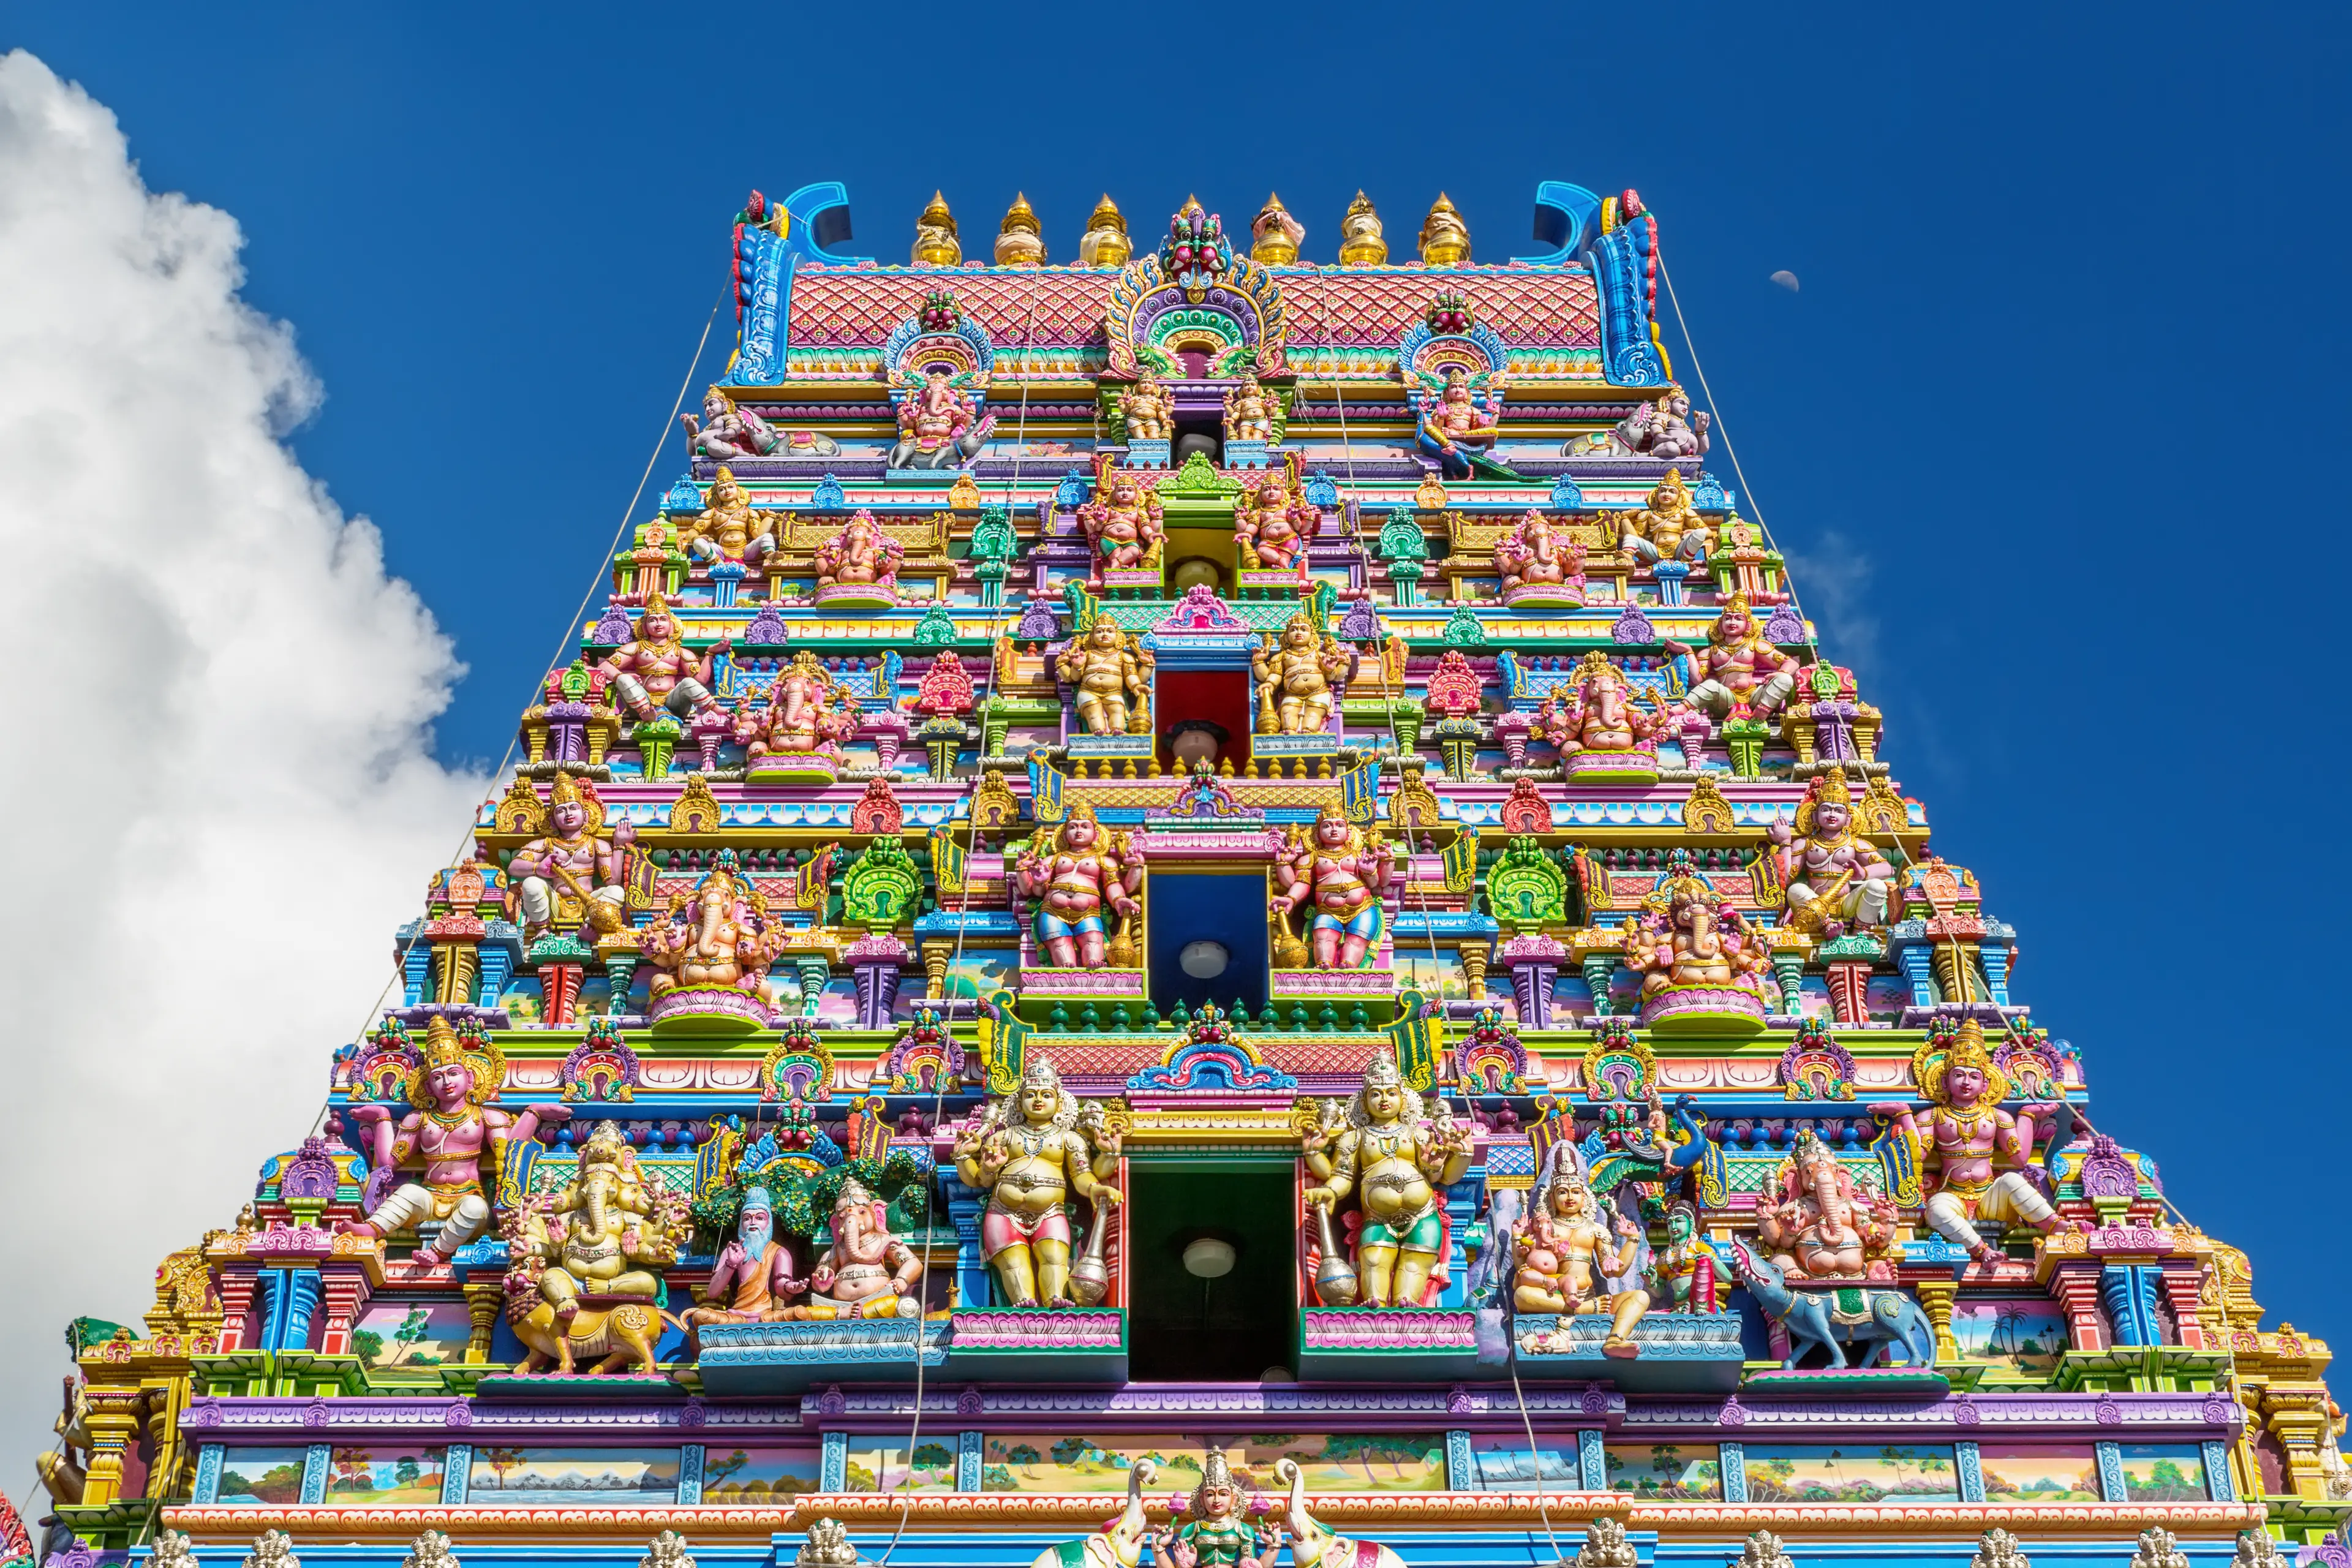 Facade of a Hindu temple in Victoria